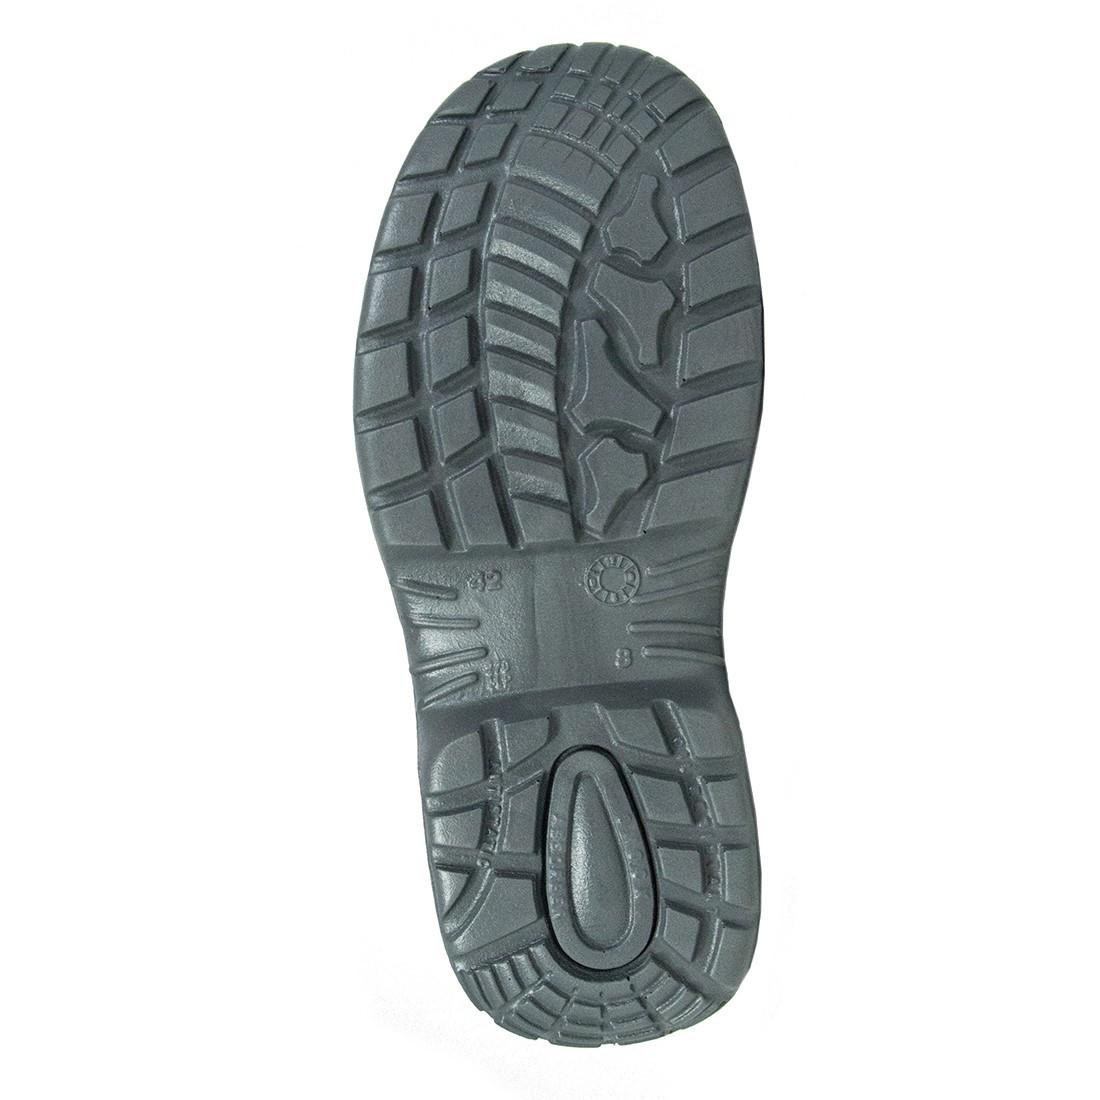 Tribeca Shoe S1 SRC - Les chaussures de protection